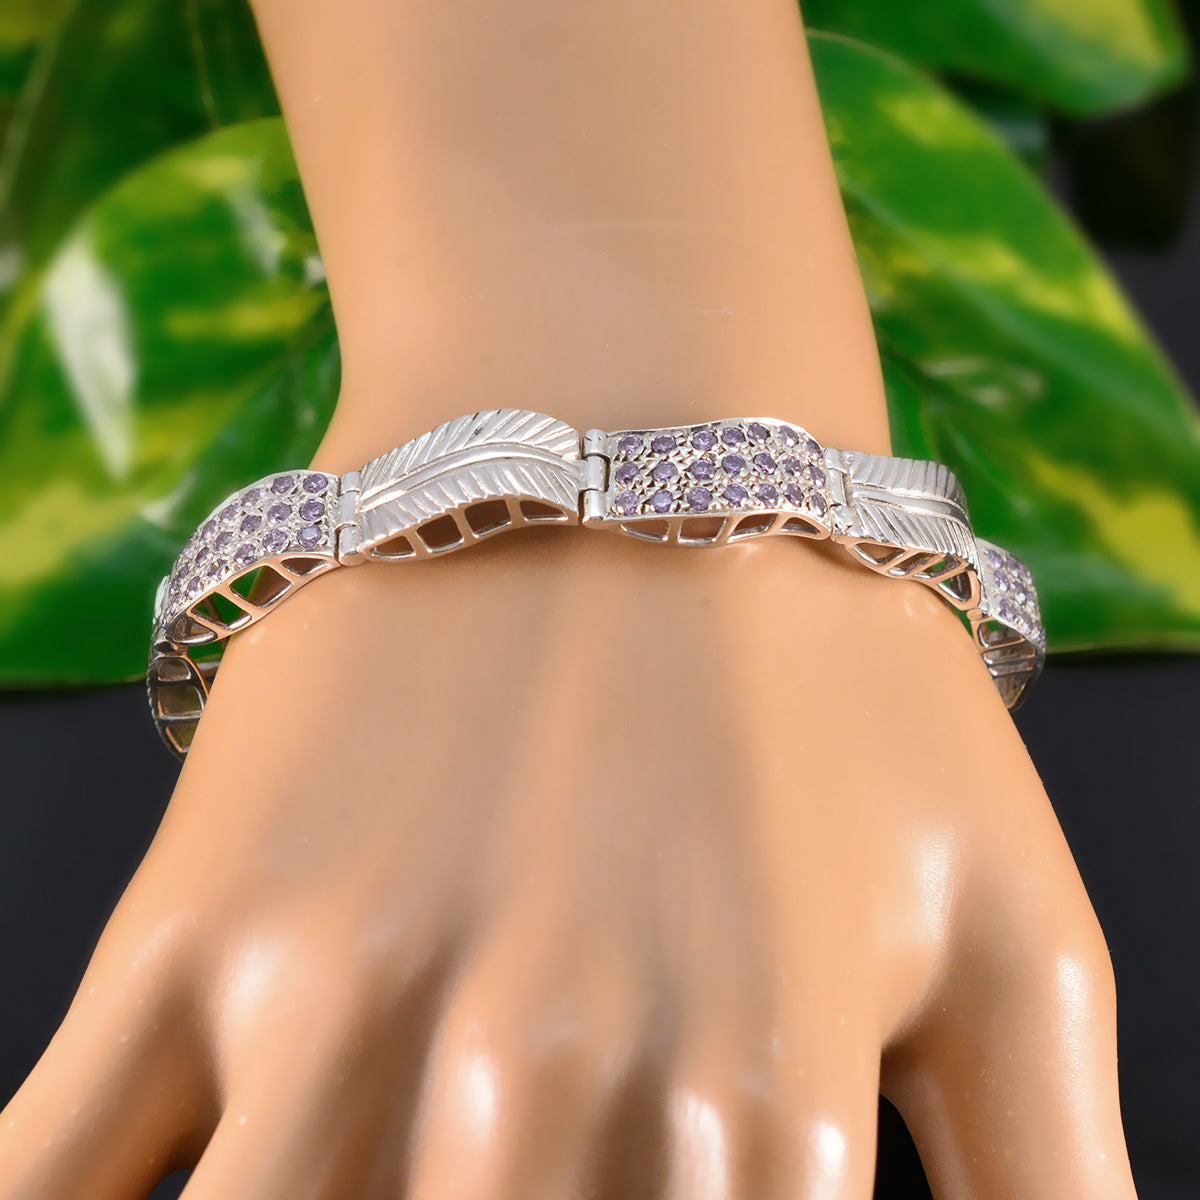 riyo komplett 925 sterling silver armband för kvinnor ametist armband bezel inställning armband med länk charm armband l storlek 6-8,5 tum.